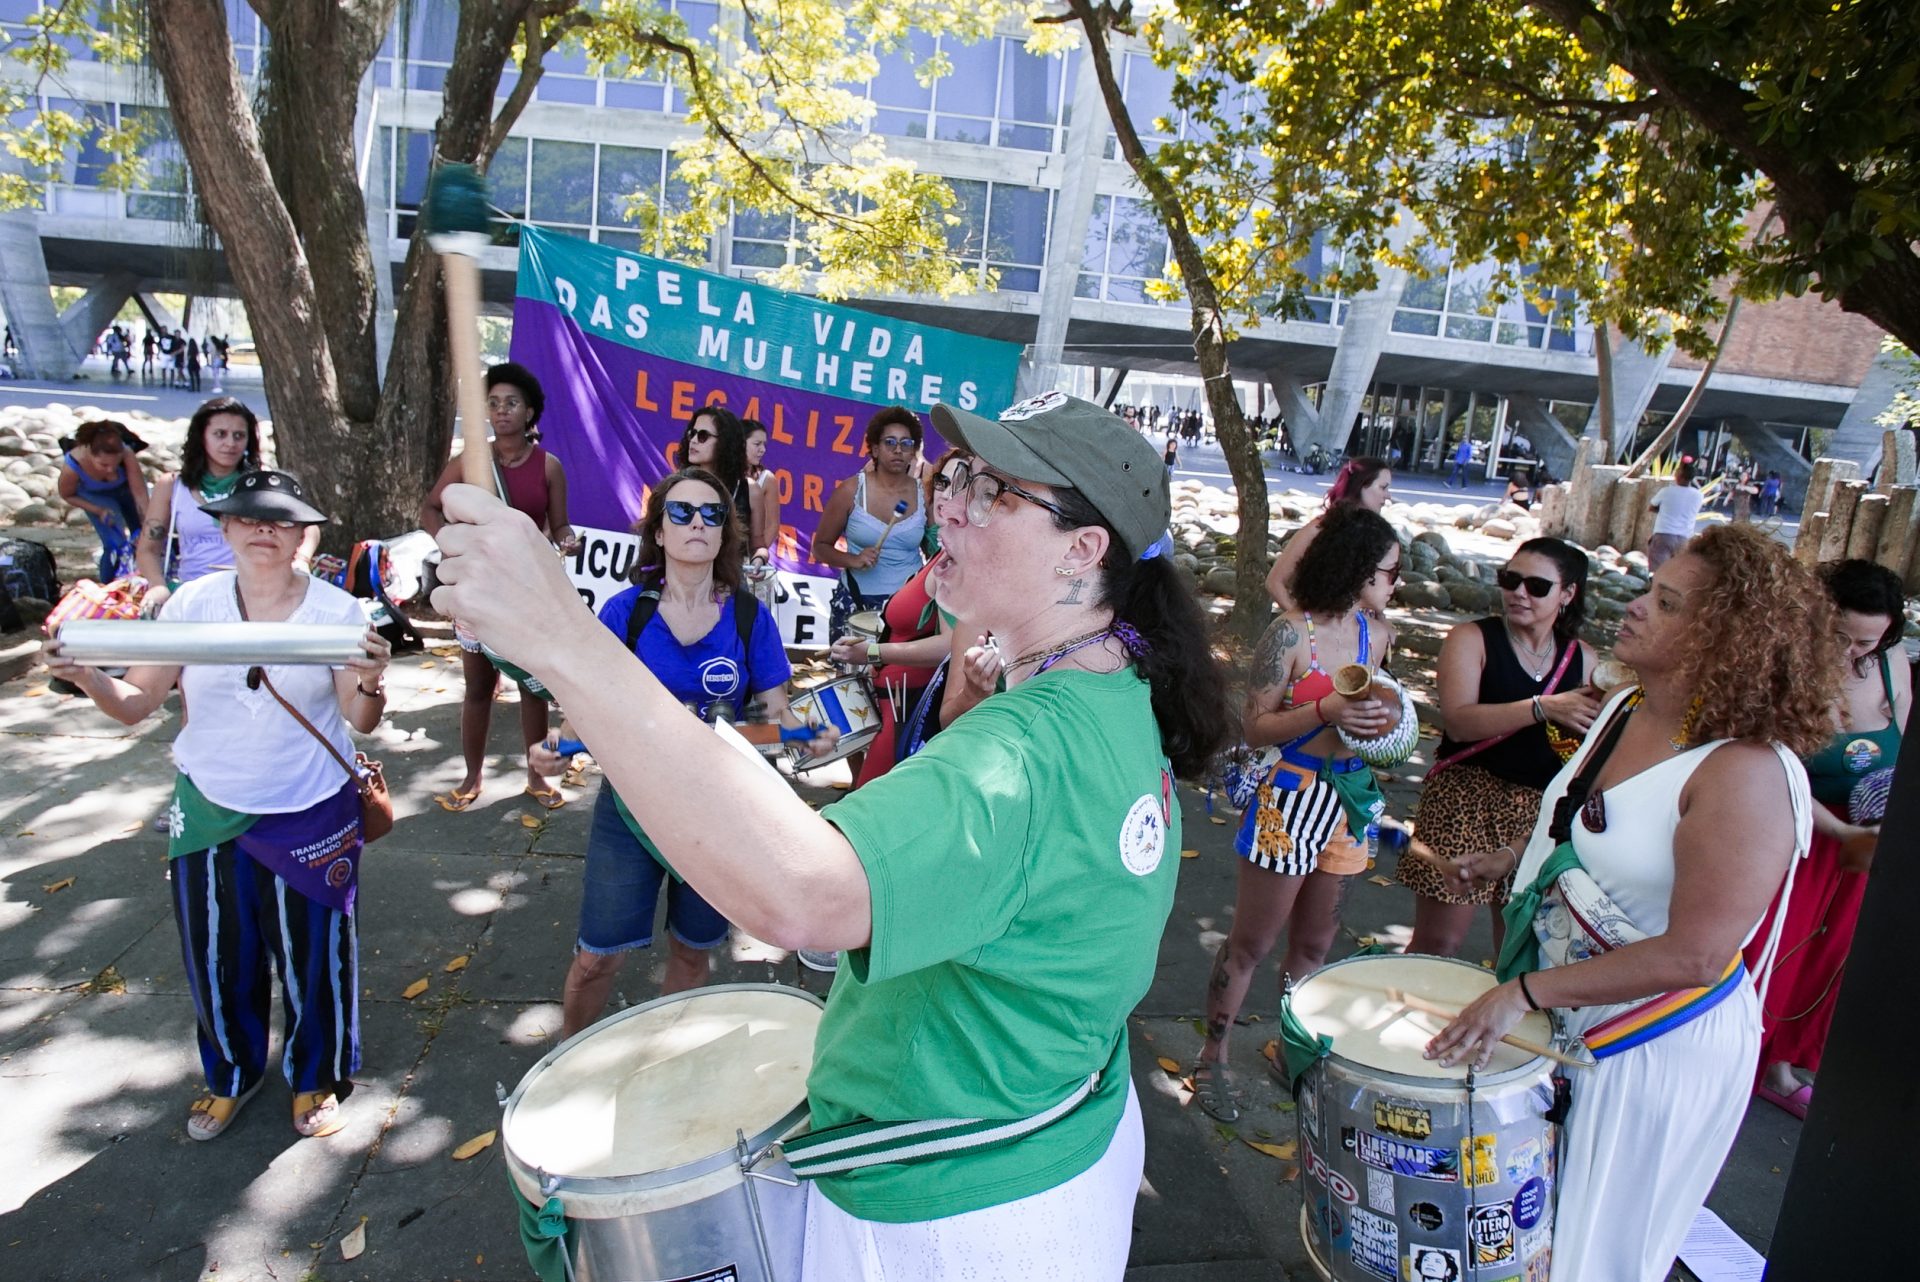 Diversas mulheres tocam instrumentos e batucada. Atrás há uma bandeira em roxo e verde.